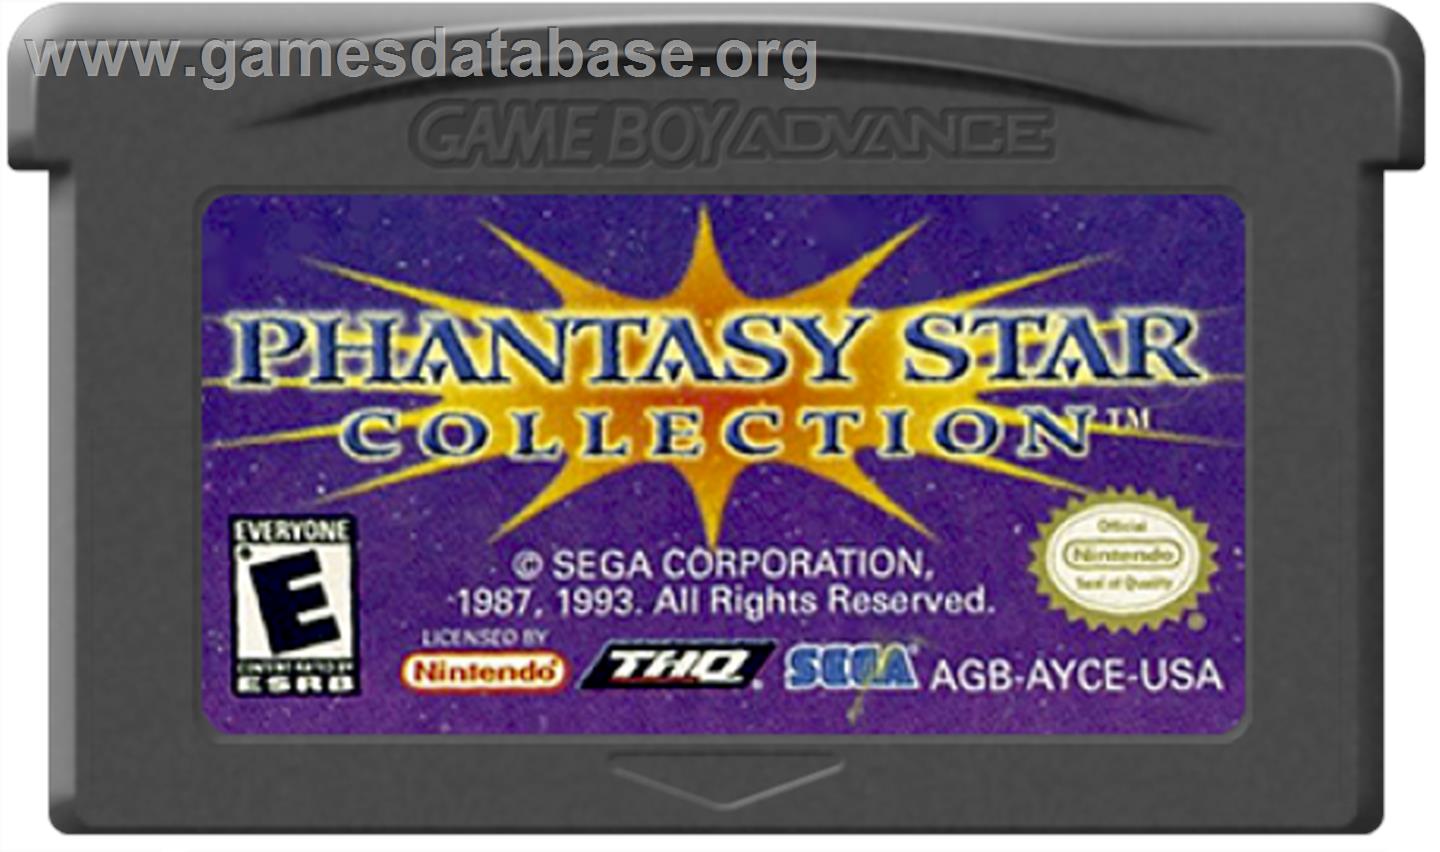 Phantasy Star Collection - Nintendo Game Boy Advance - Artwork - Cartridge